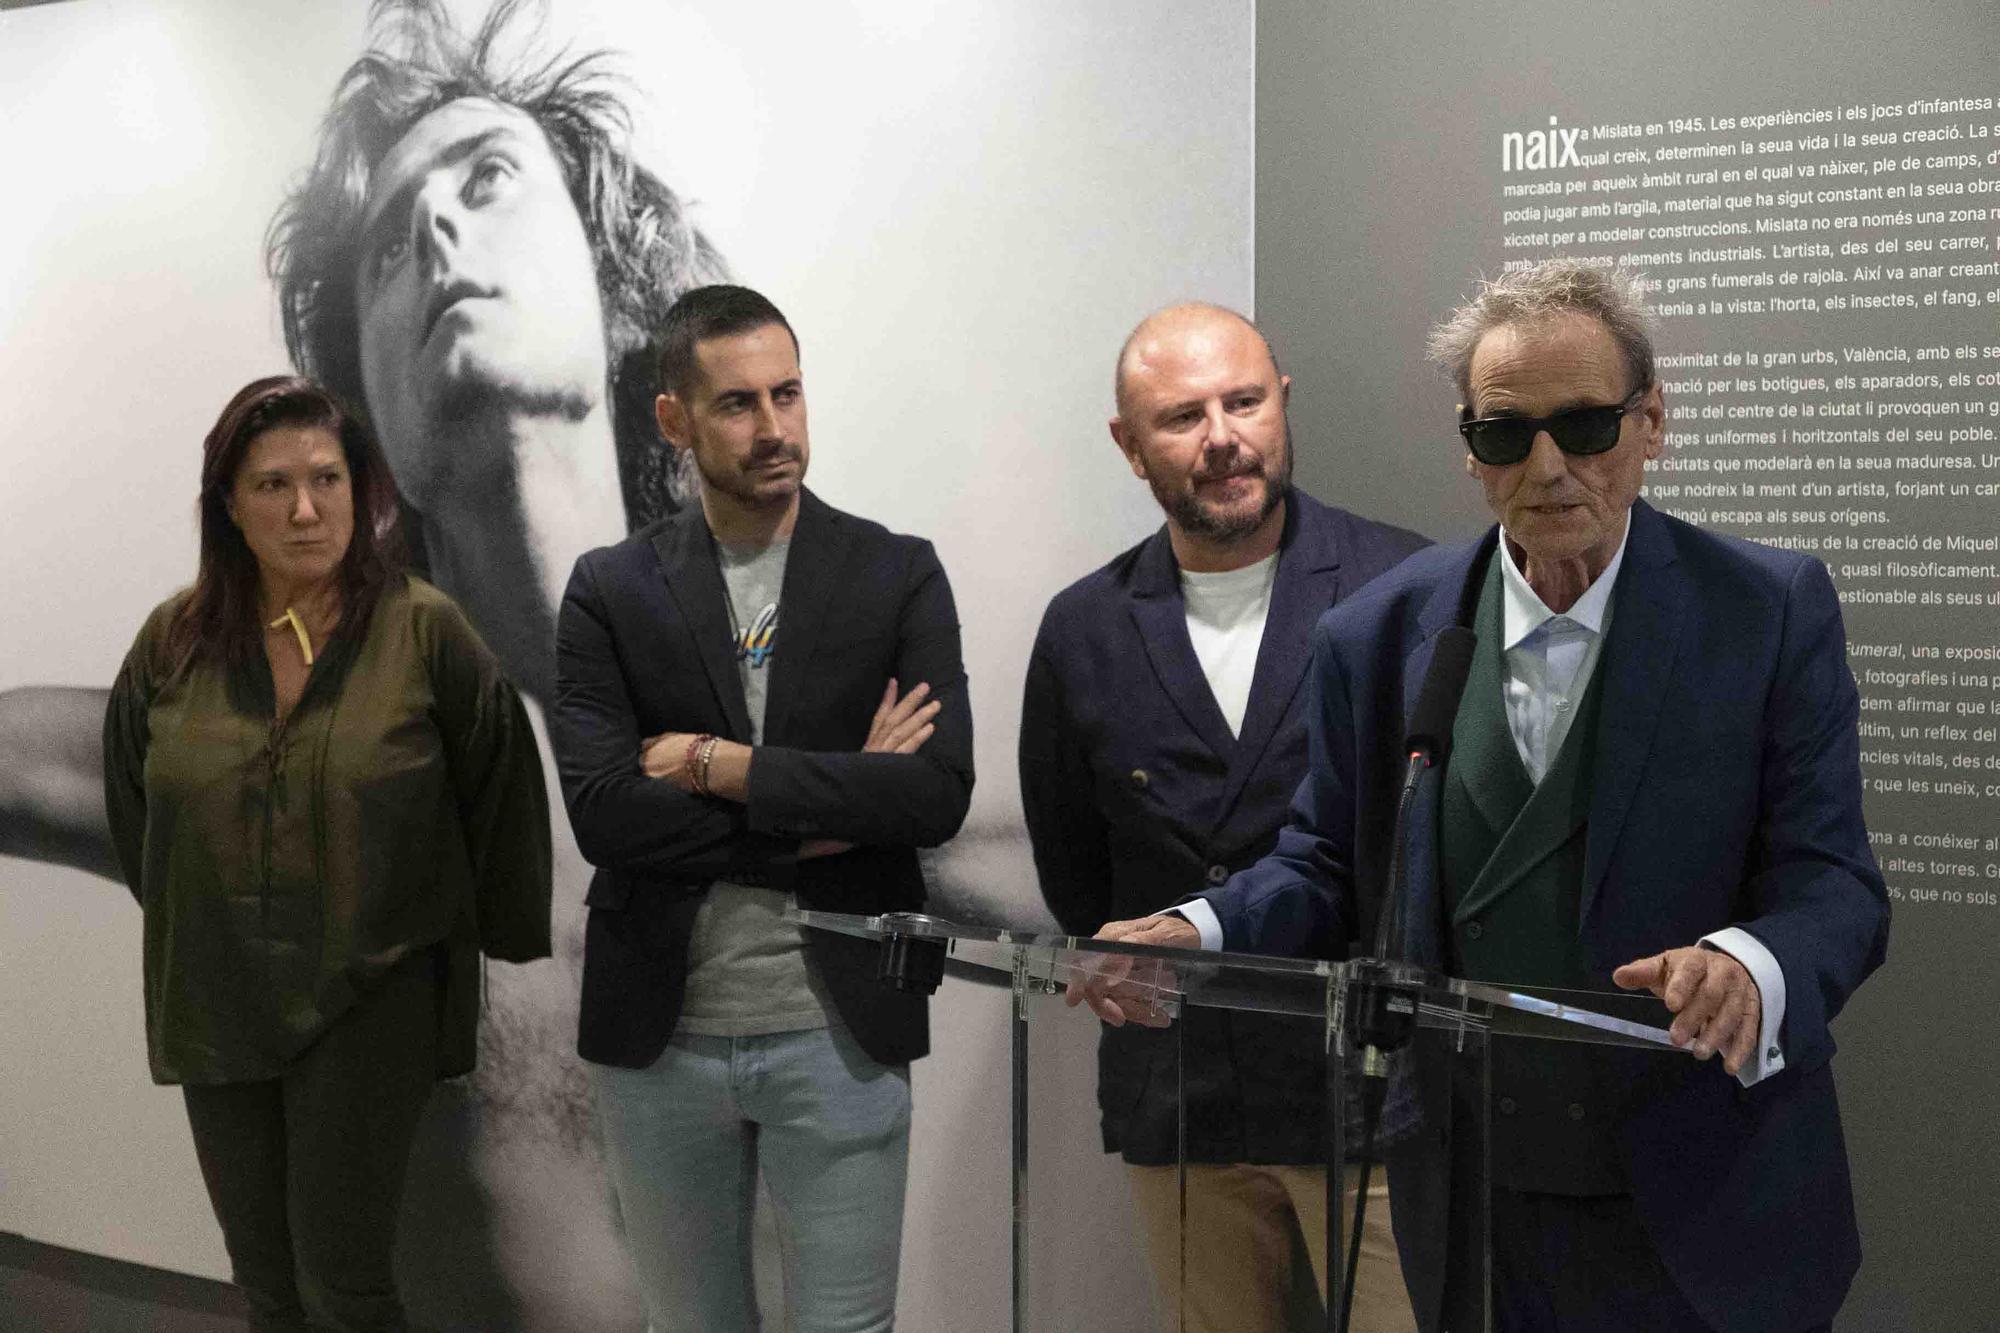 Exposición de Miquel Navarro en la Diputación